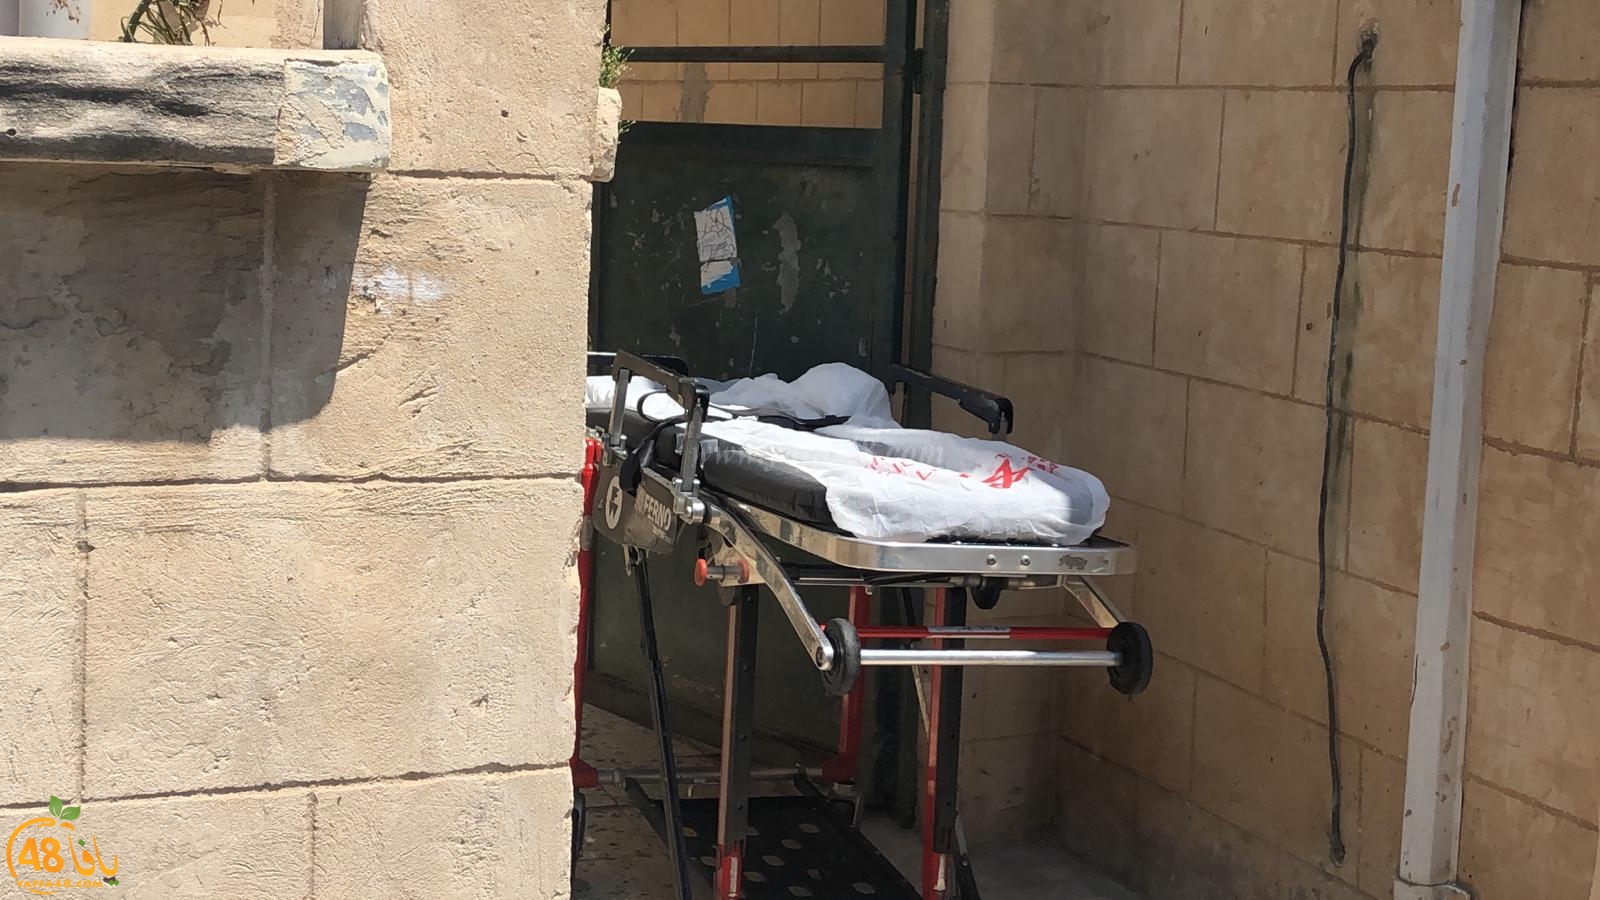   يافا: وفاة سيدة اثر اصابتها بأزمة قلبية بالمدينة